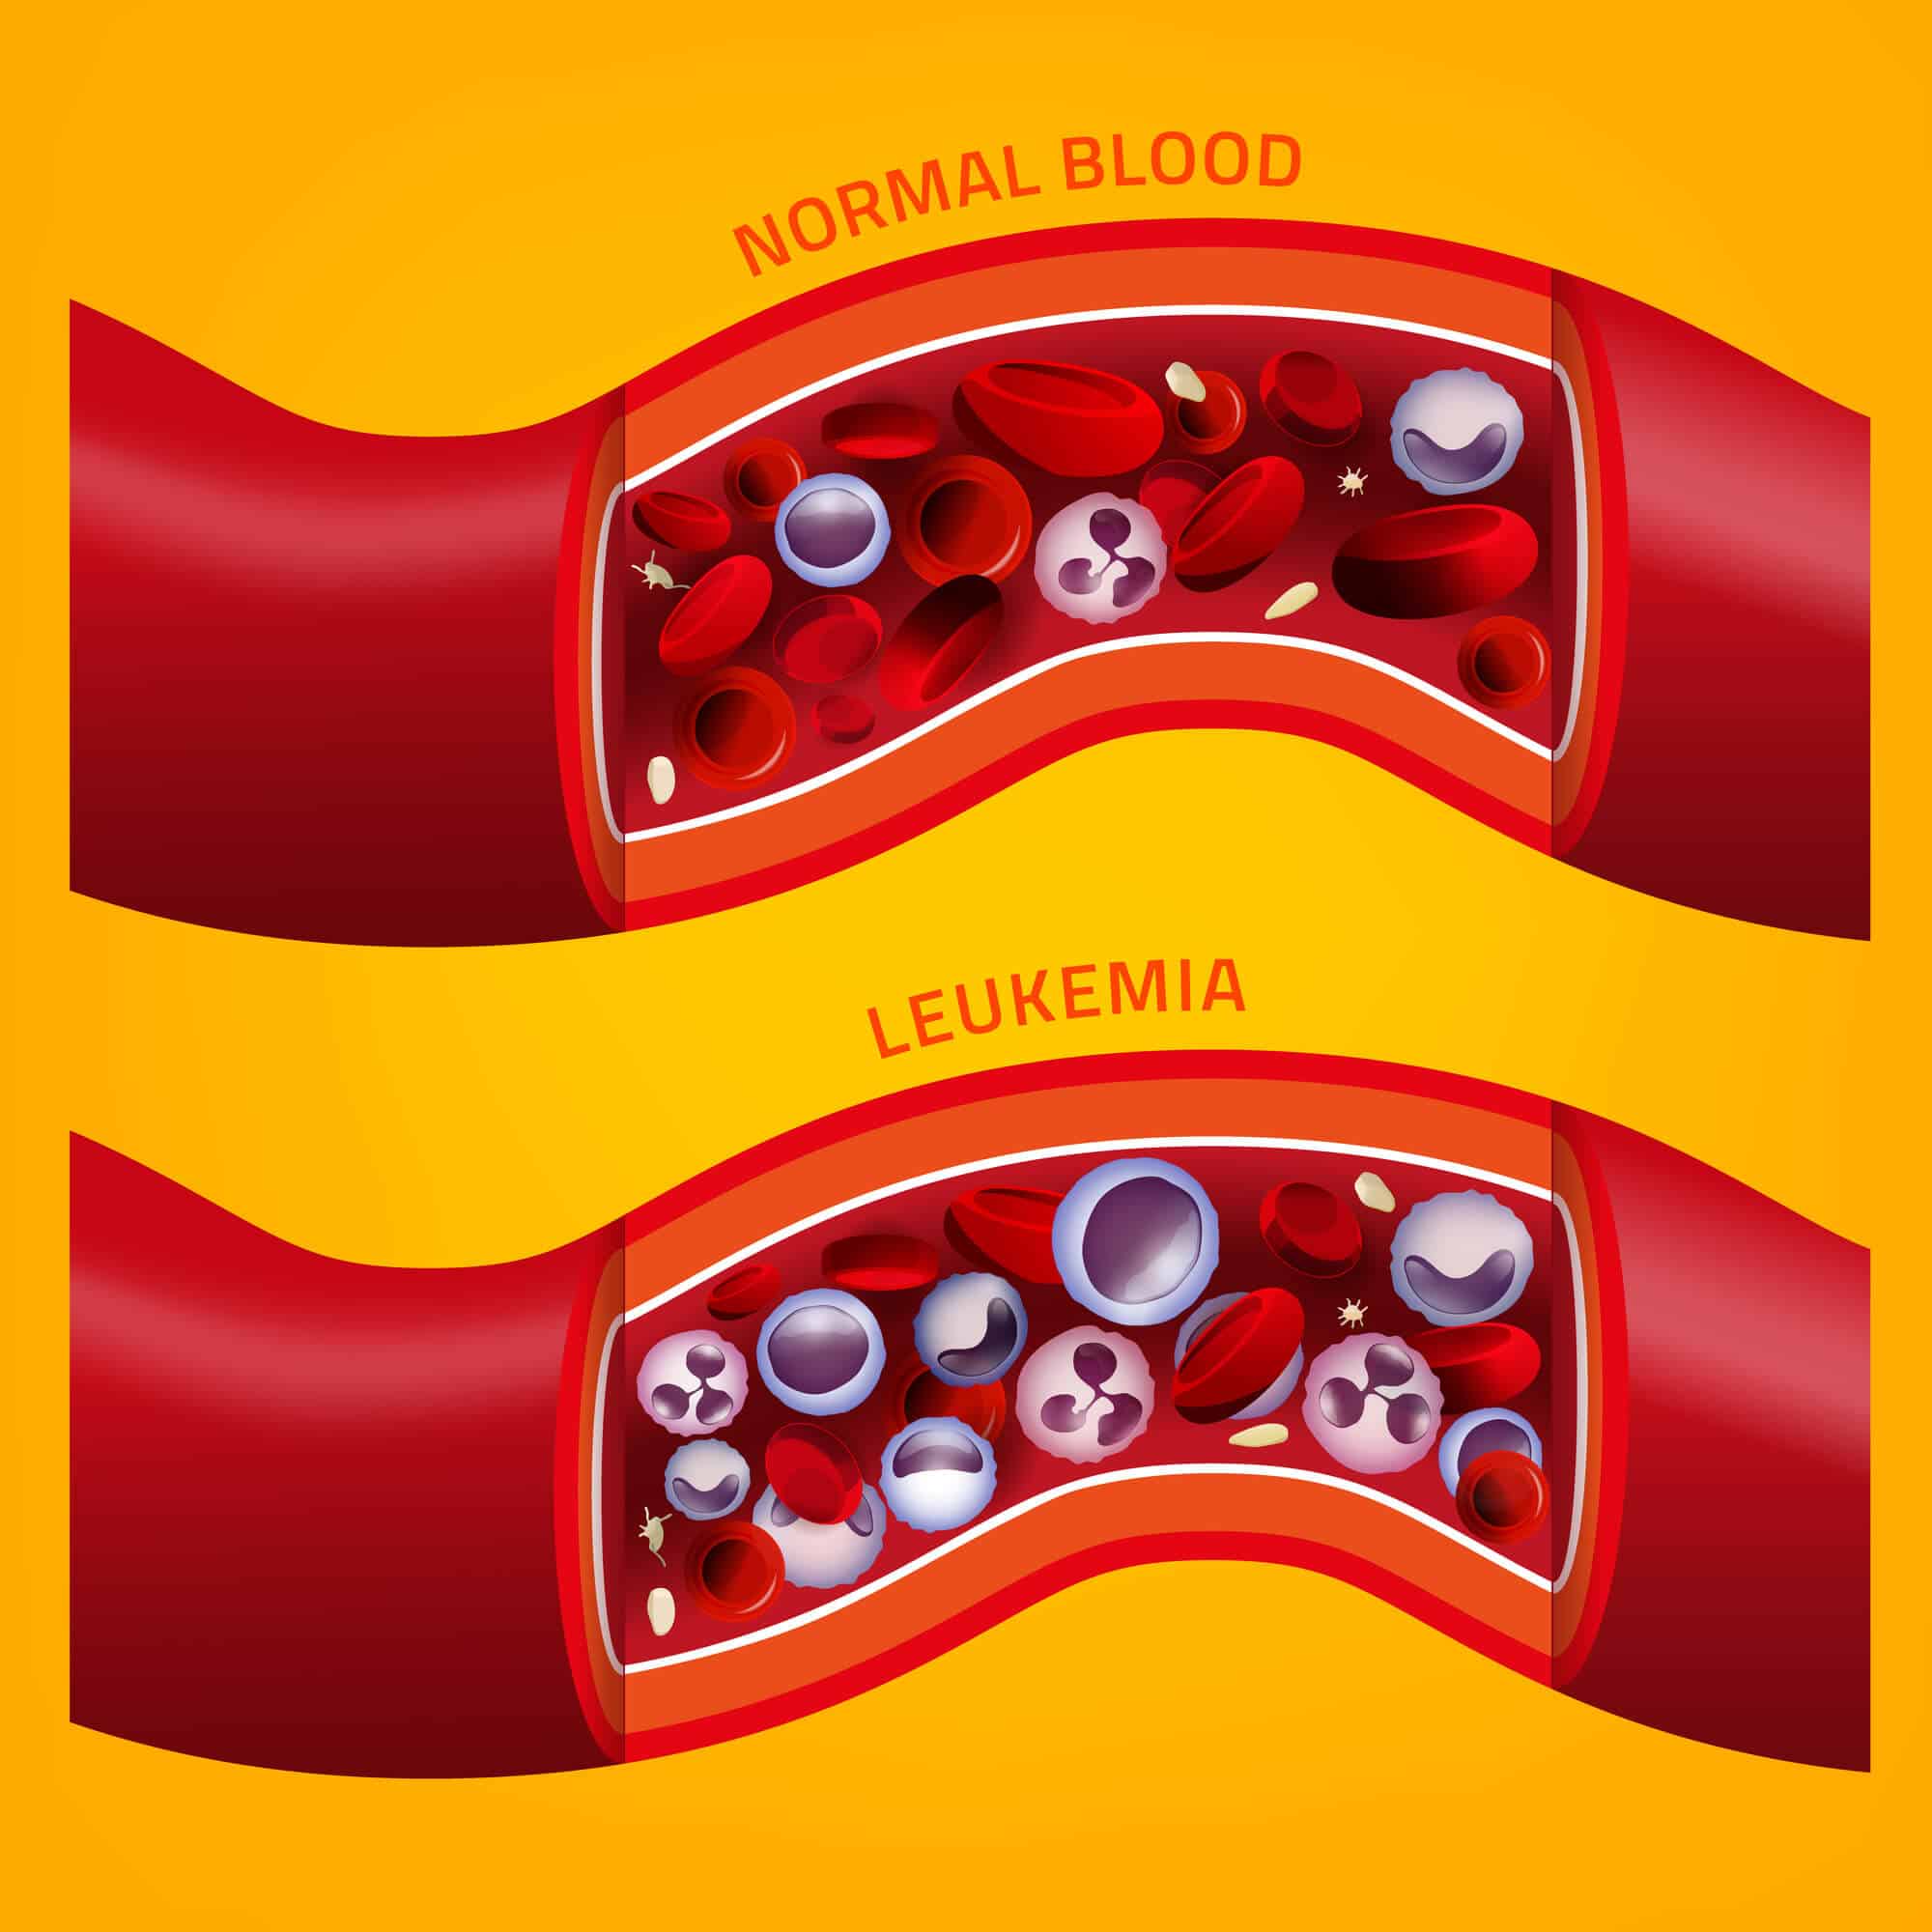 תאי סרטן הדם בהשווא לתאי דם רגילים.   <a href="https://depositphotos.com. ">המחשה: depositphotos.com</a>